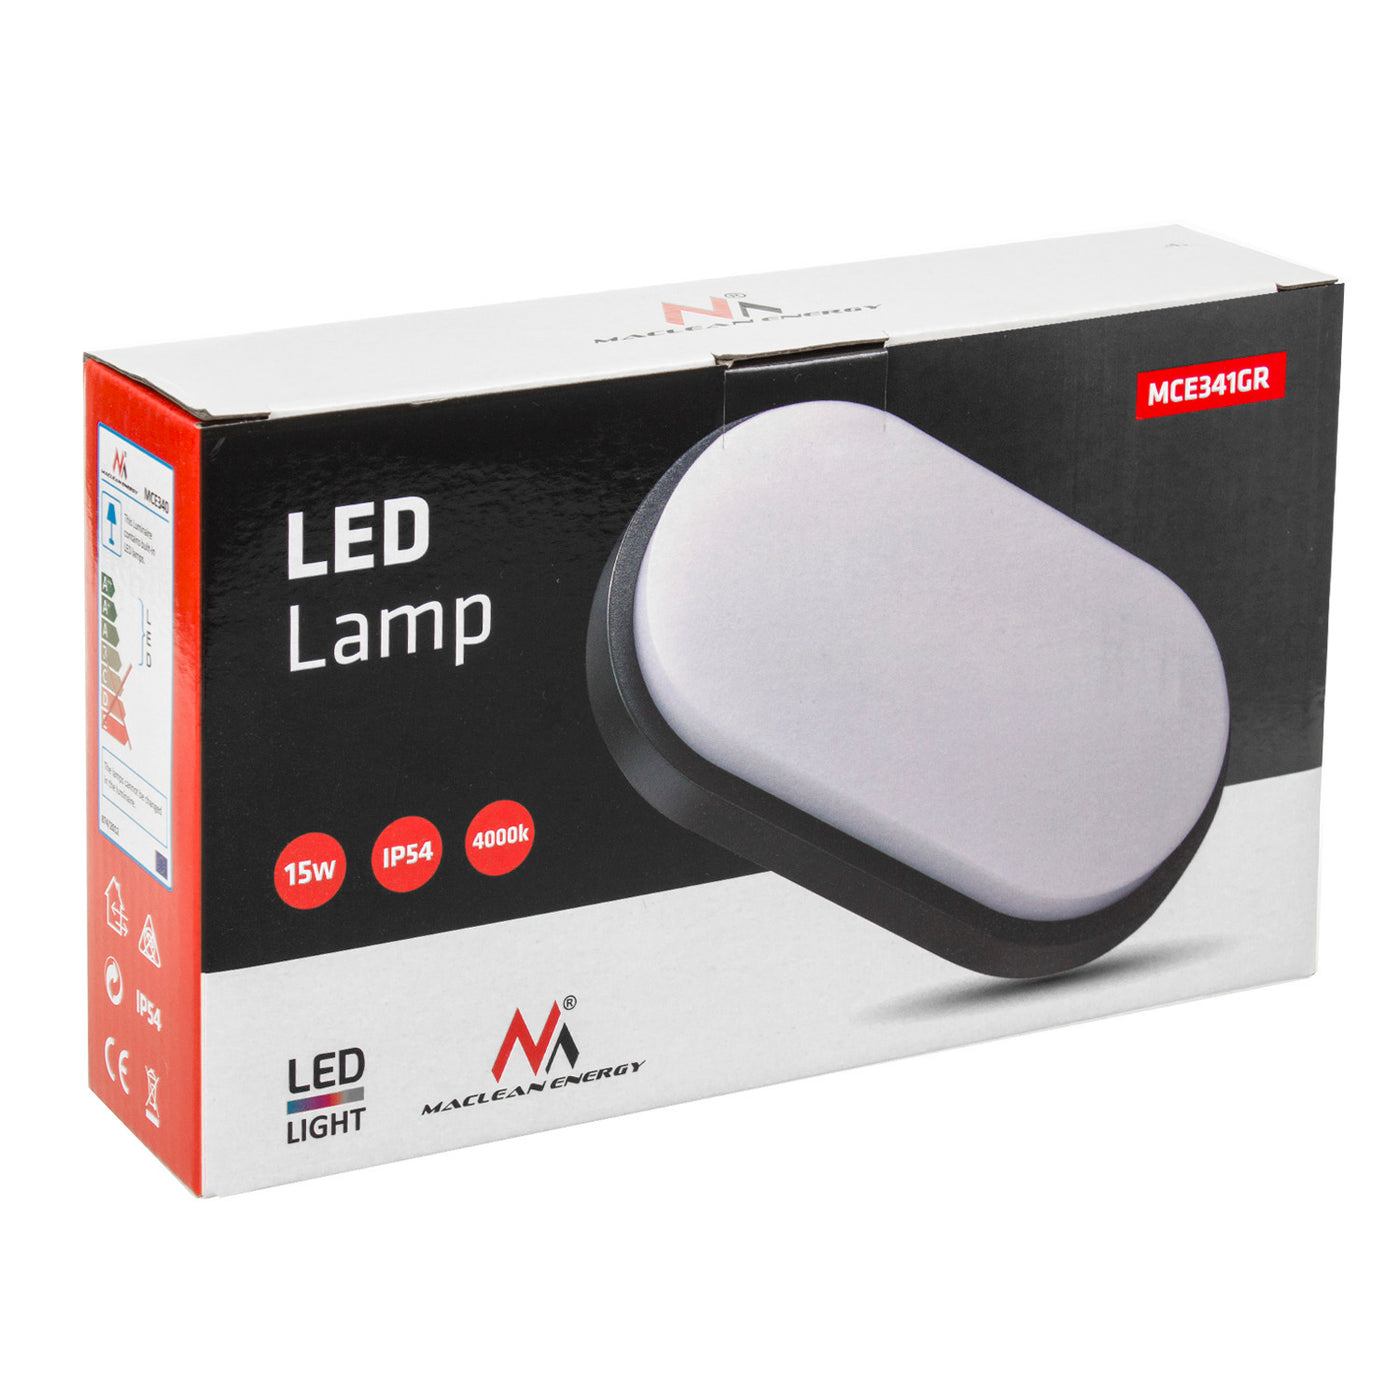 Lampa LED ścienno sufitowa MCE341 GR 1100lm 15W IP54 Maclean Energy kolor szary, kolor barwowy naturalny biały (4000K)